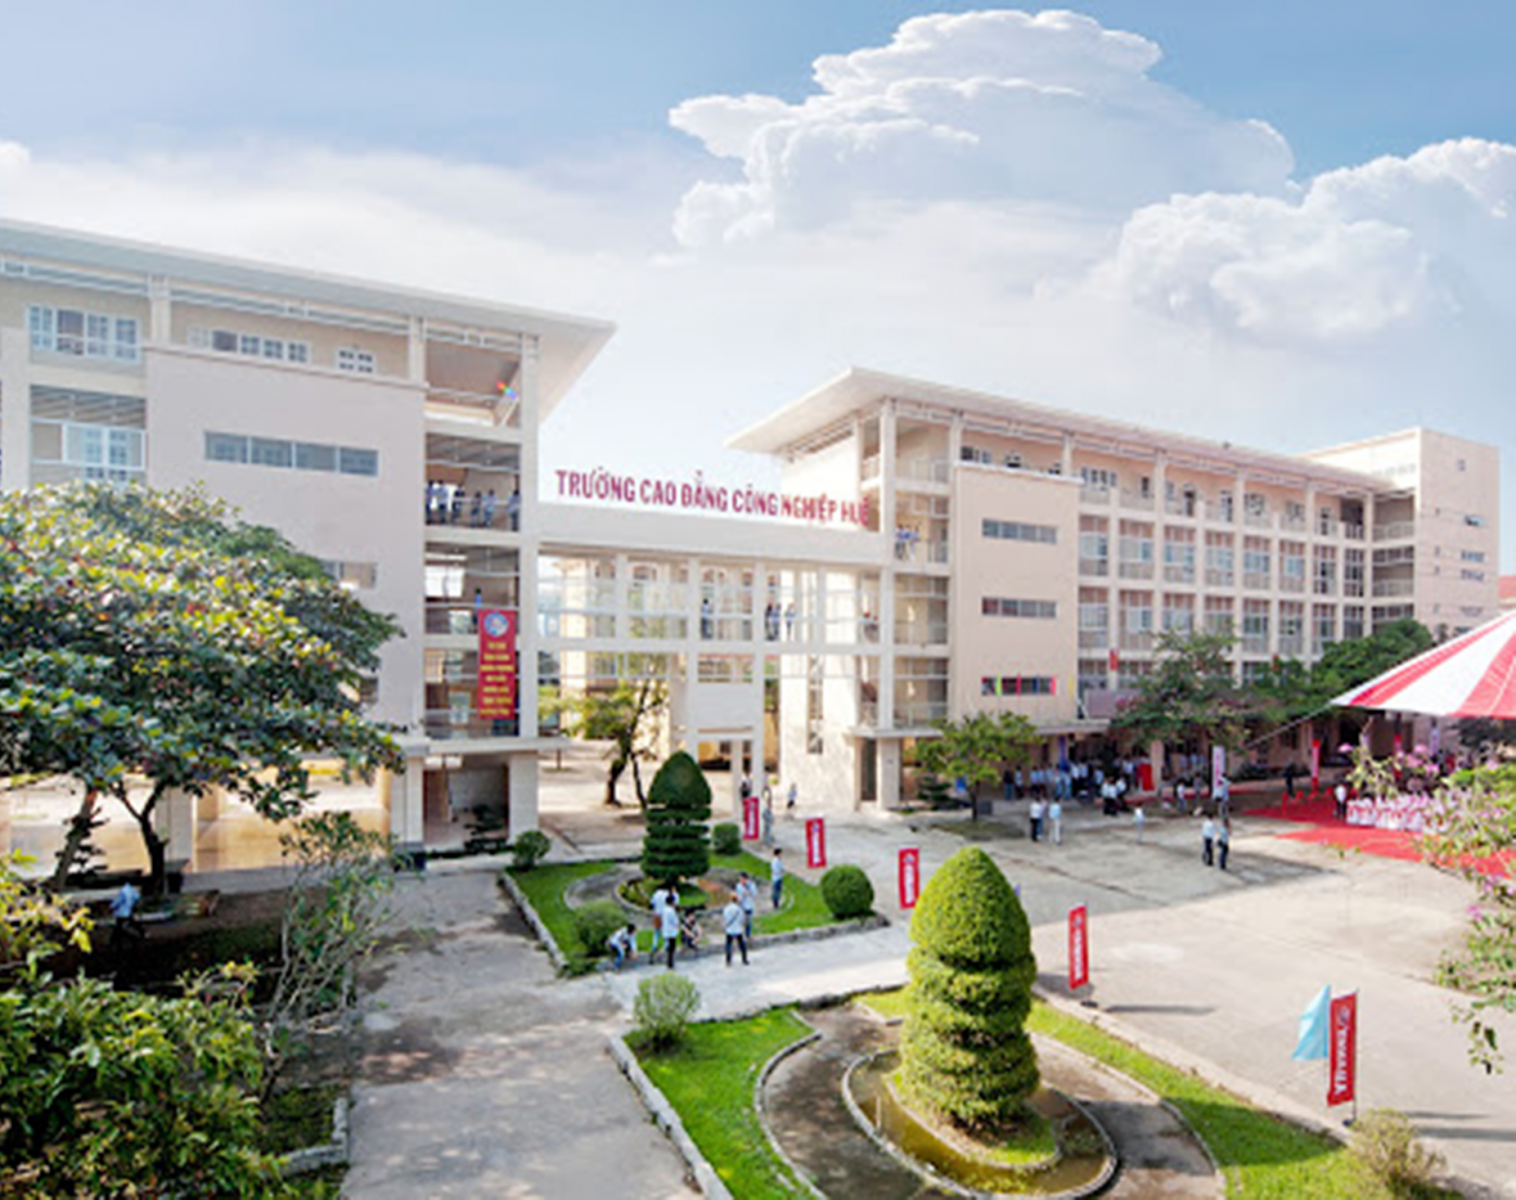 Các cơ sở giáo dục nghề nghiệp tại tỉnh Thừa Thiên Huế